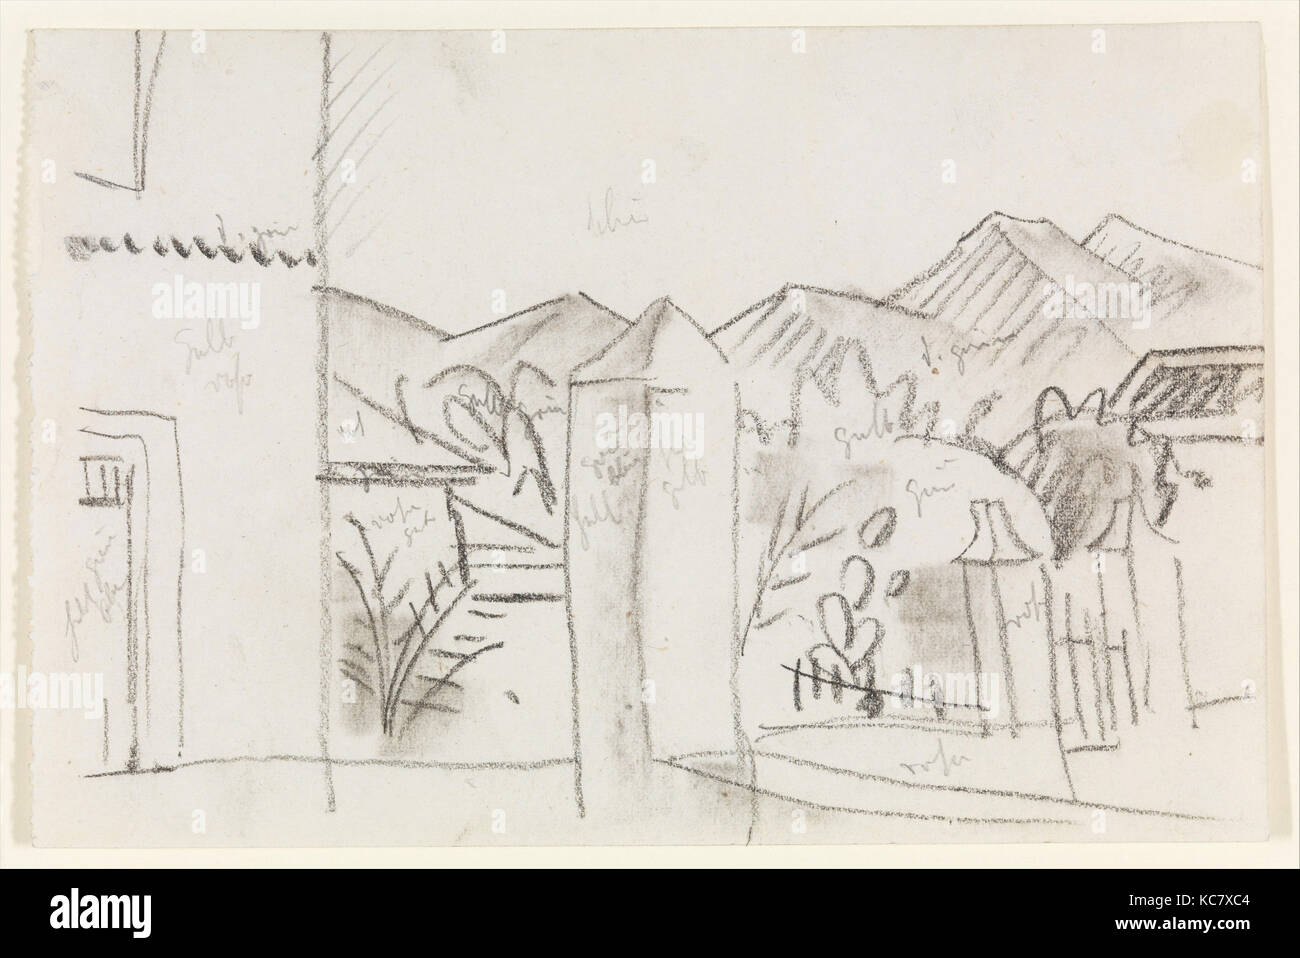 Vista tunisino, 1914, gesso su carta, 4 1/8 x 6 1/8 in. (10,5 x 15,6 cm), disegni, August Macke (tedesco, Meschede 1887-1914 vicino Foto Stock